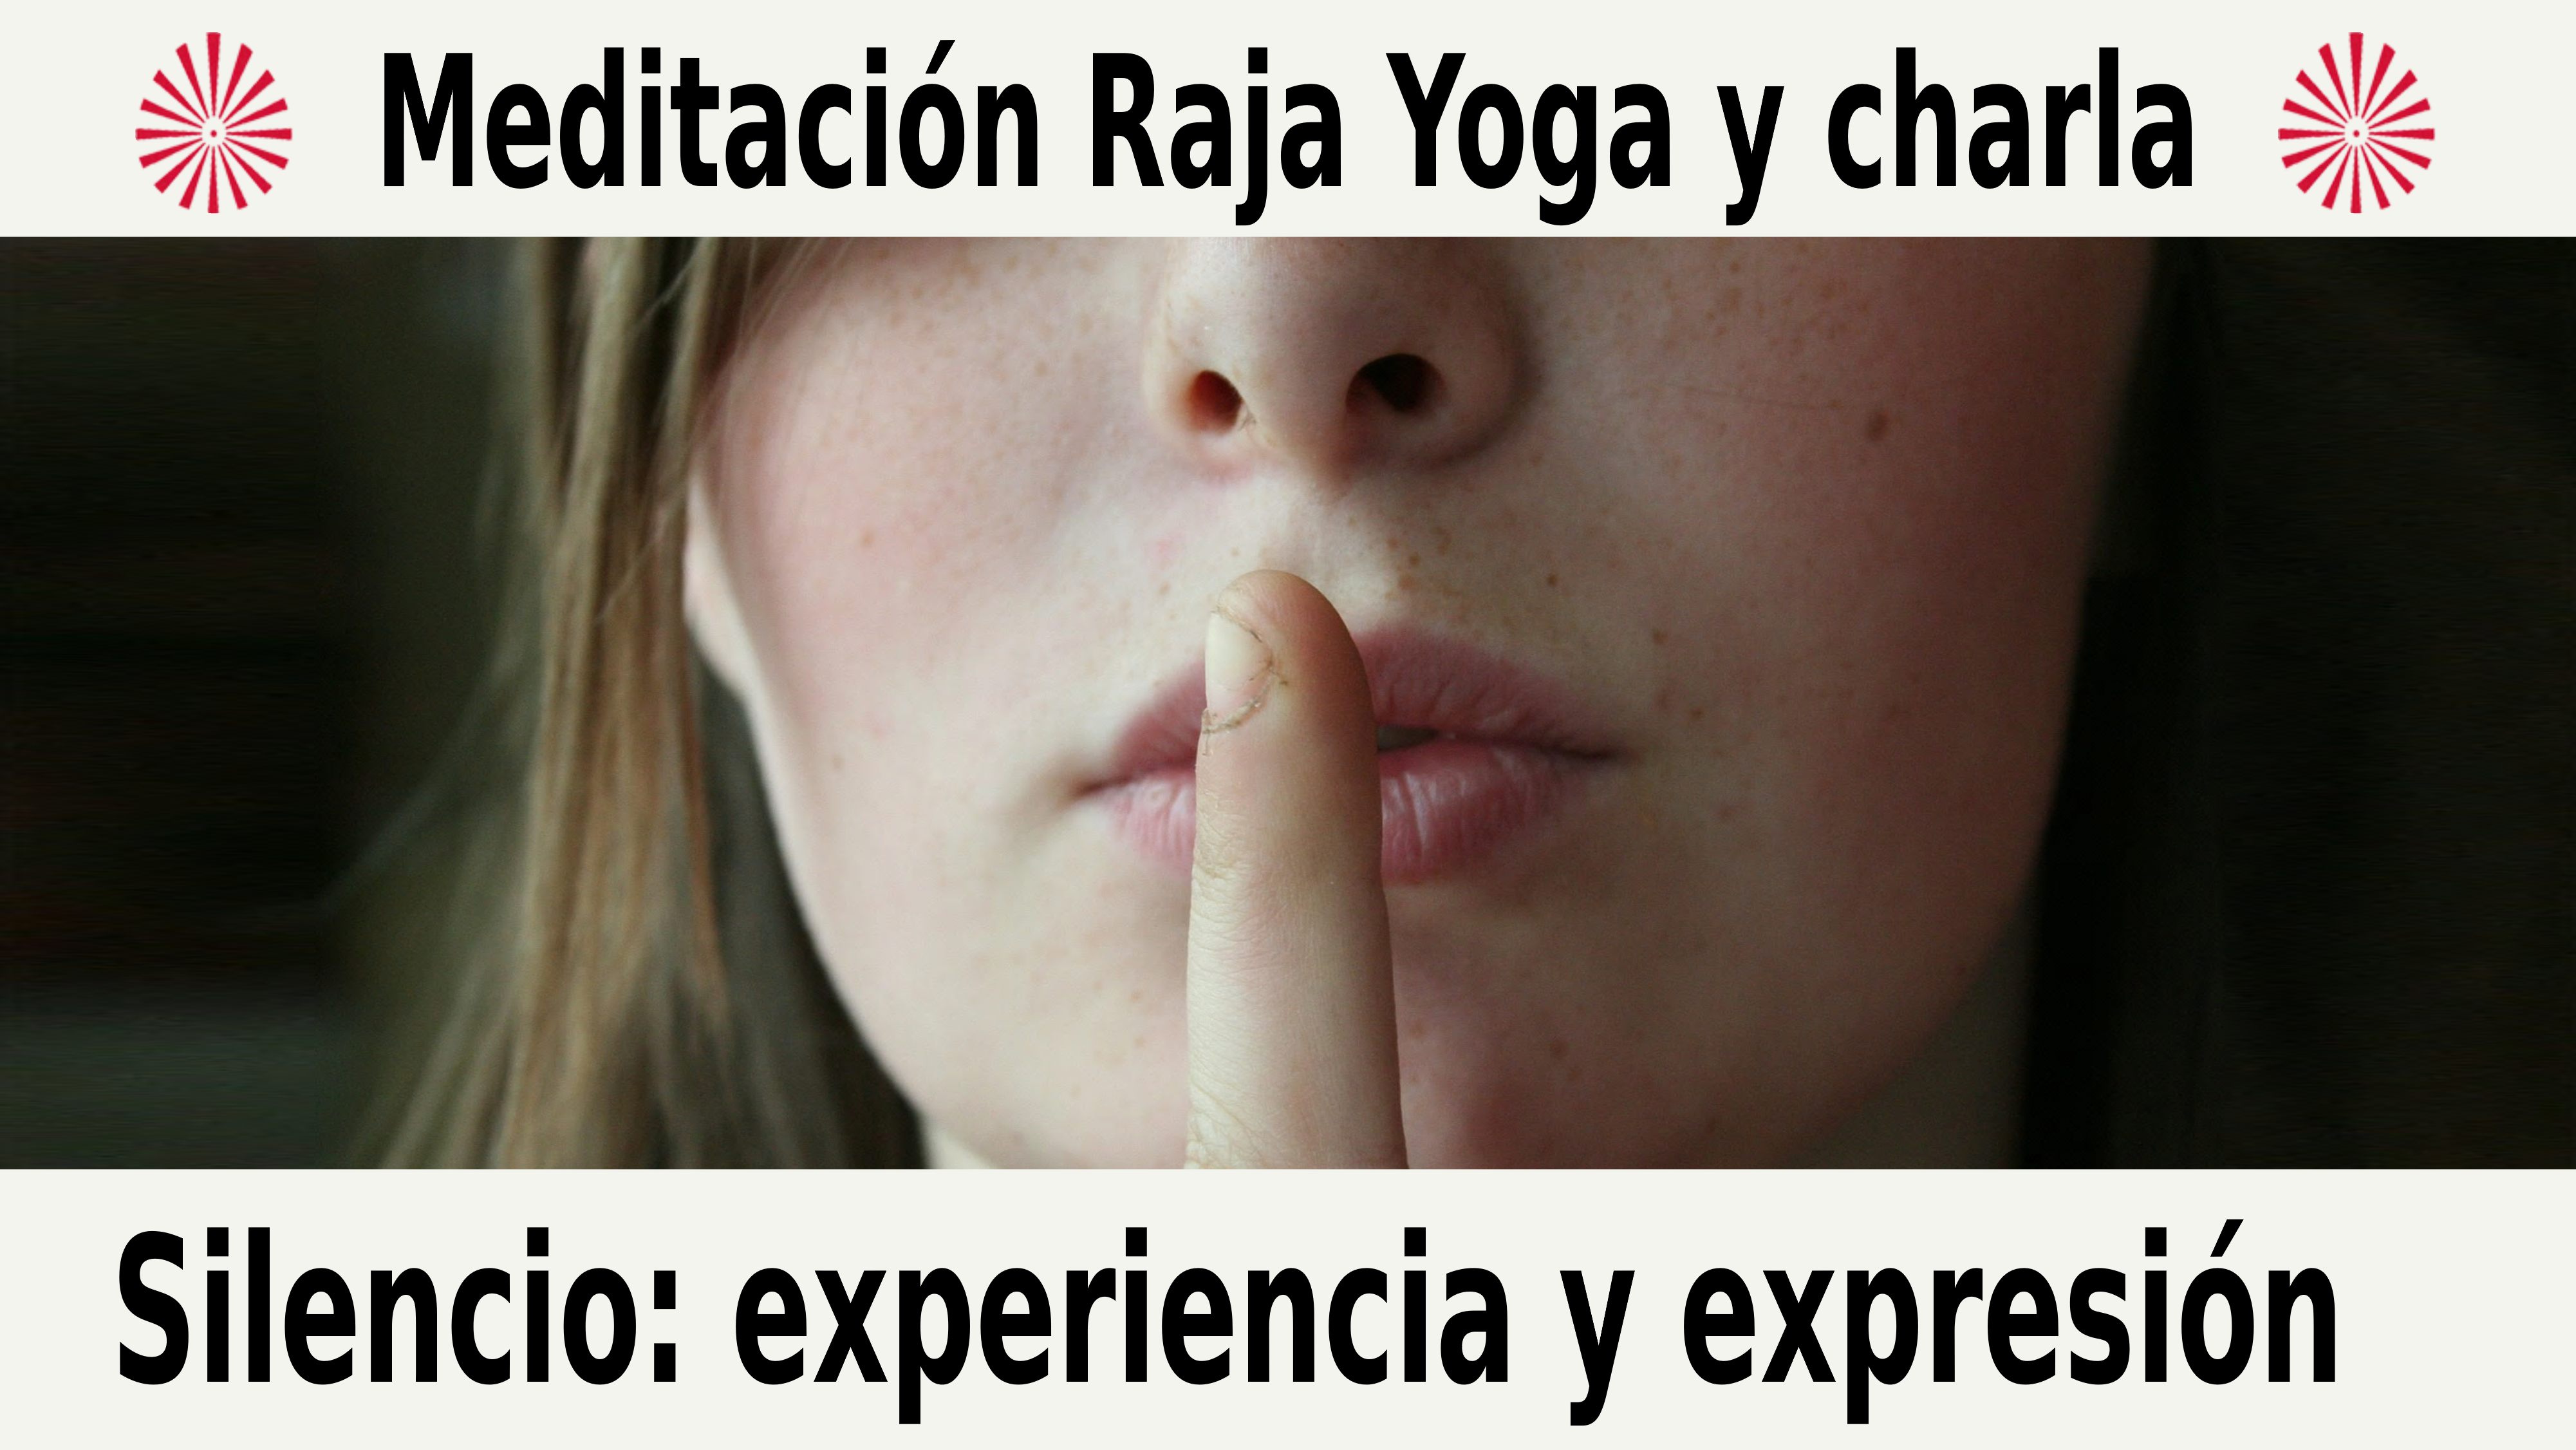 Meditación Raja Yoga y charla:  Silencio experiencia y expresión (4 Diciembre 2020) On-line desde Barcelona